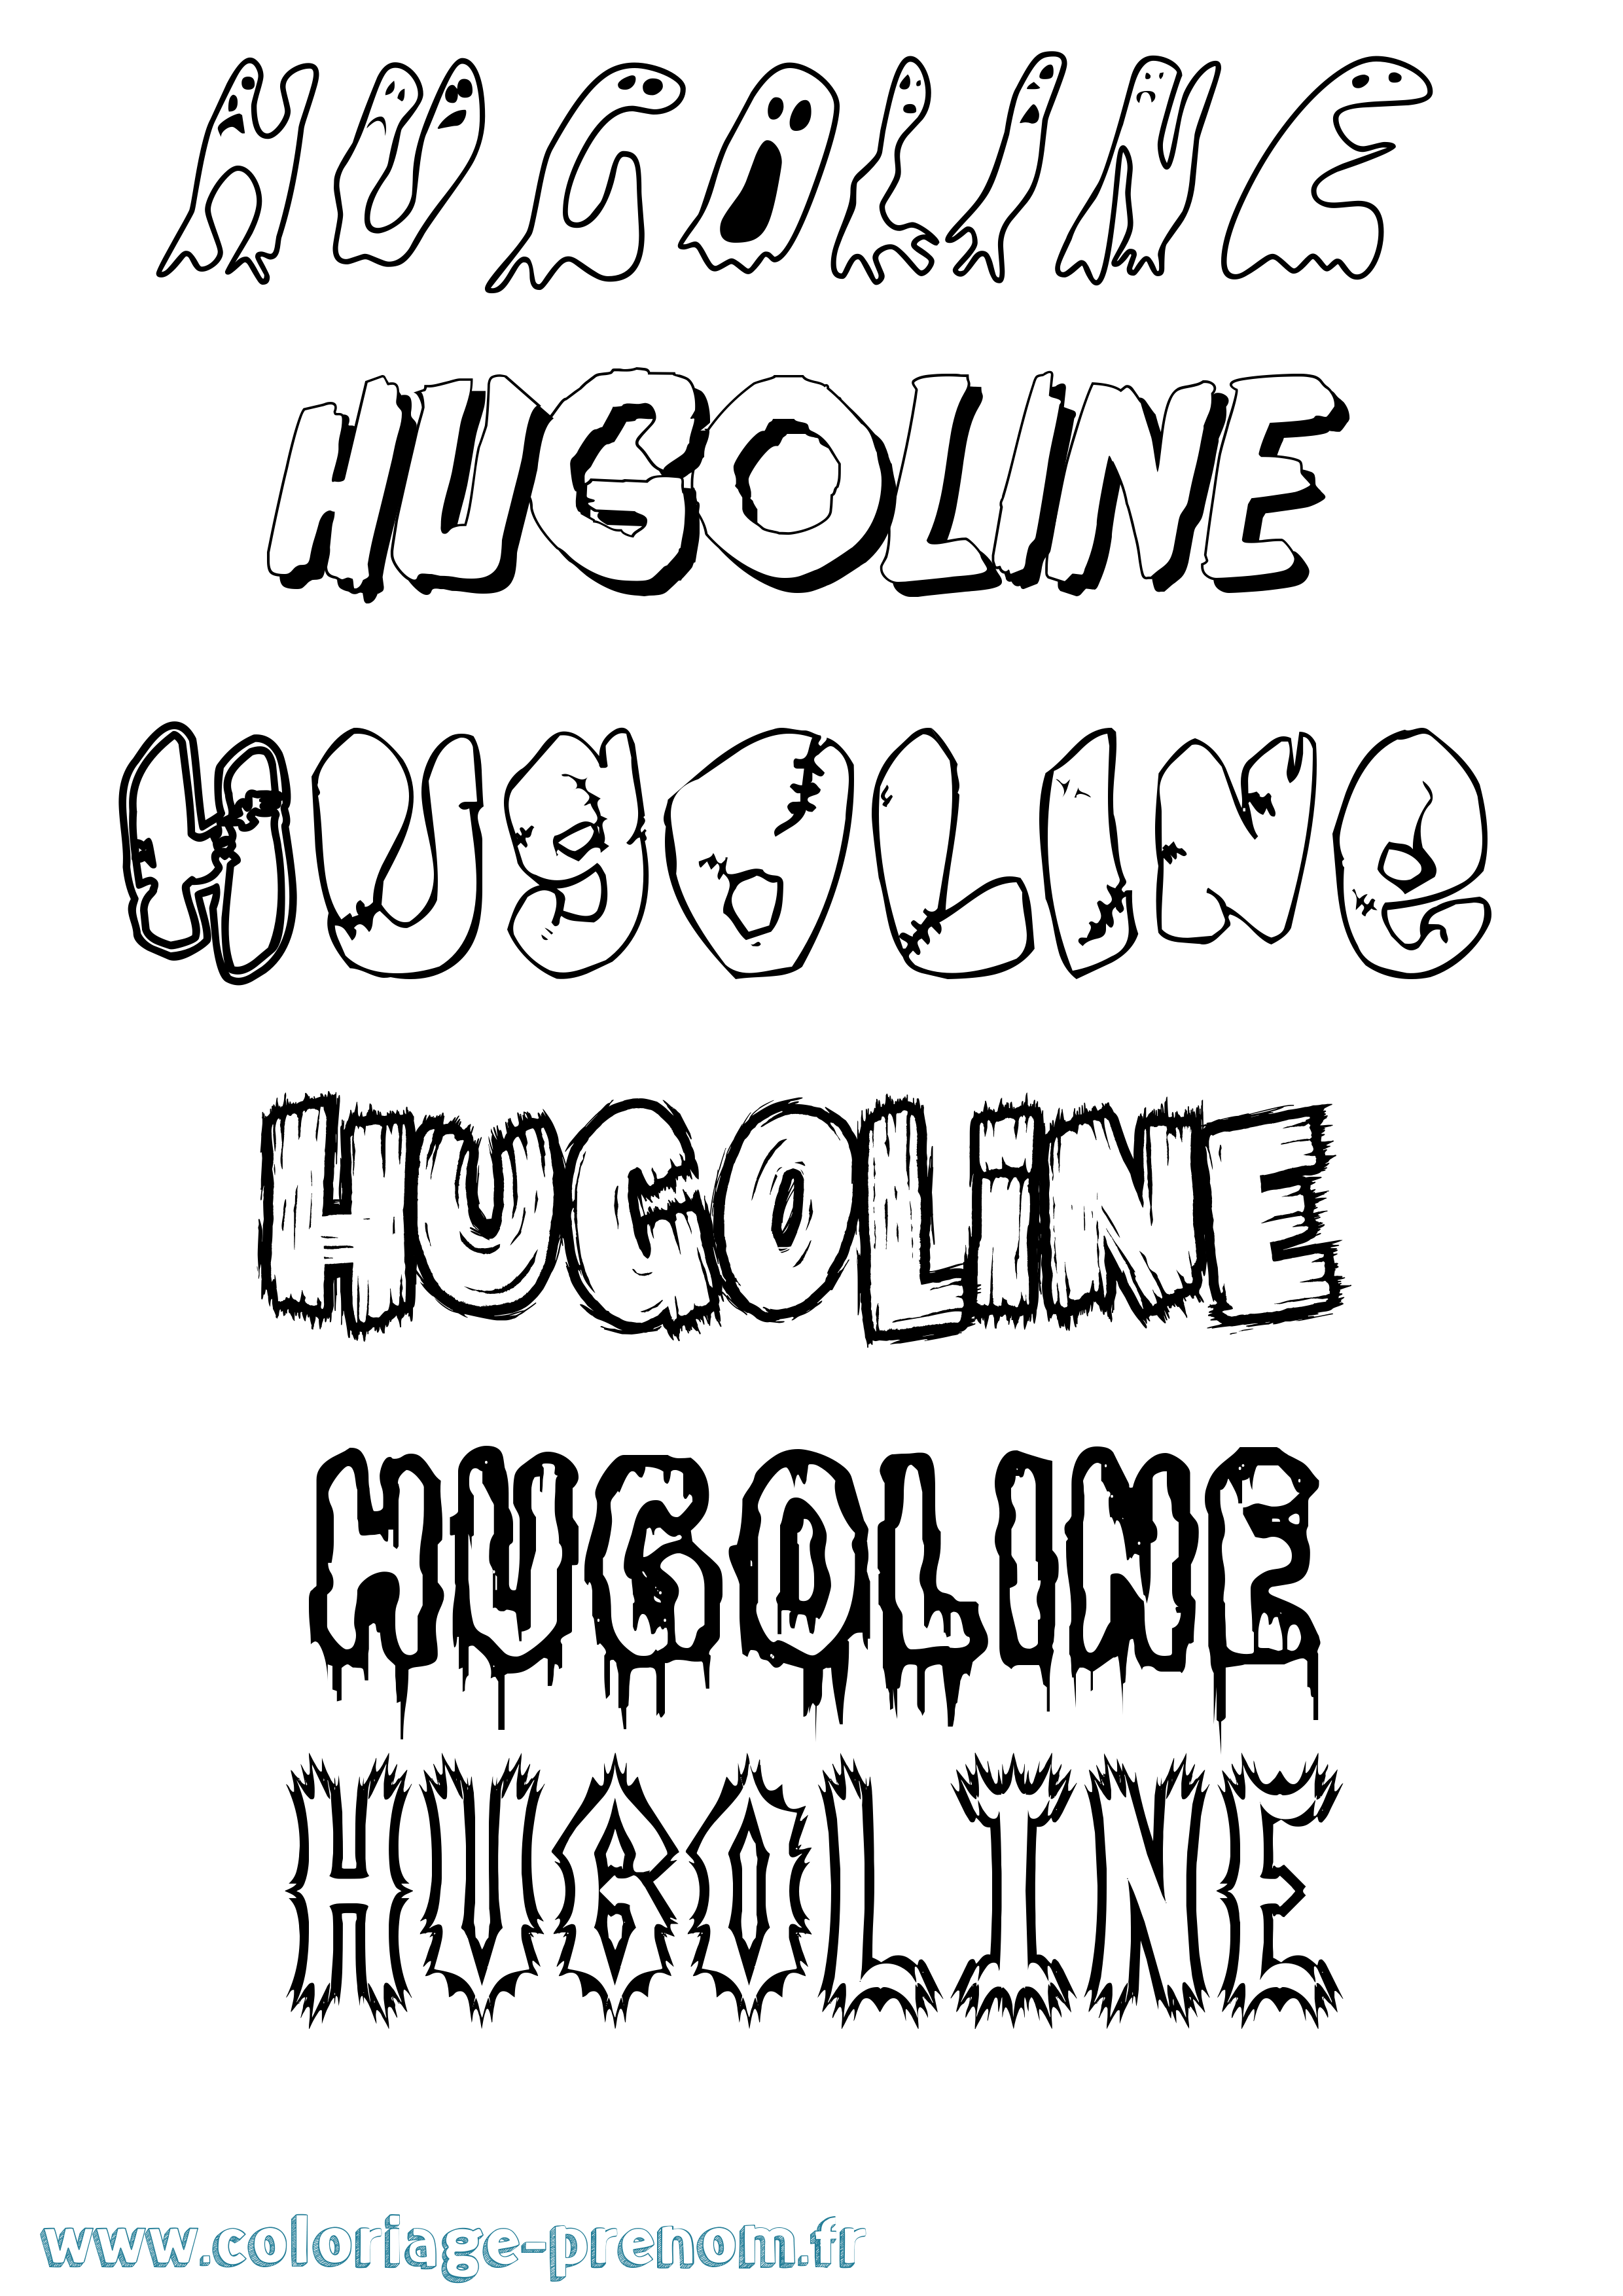 Coloriage prénom Hugoline Frisson